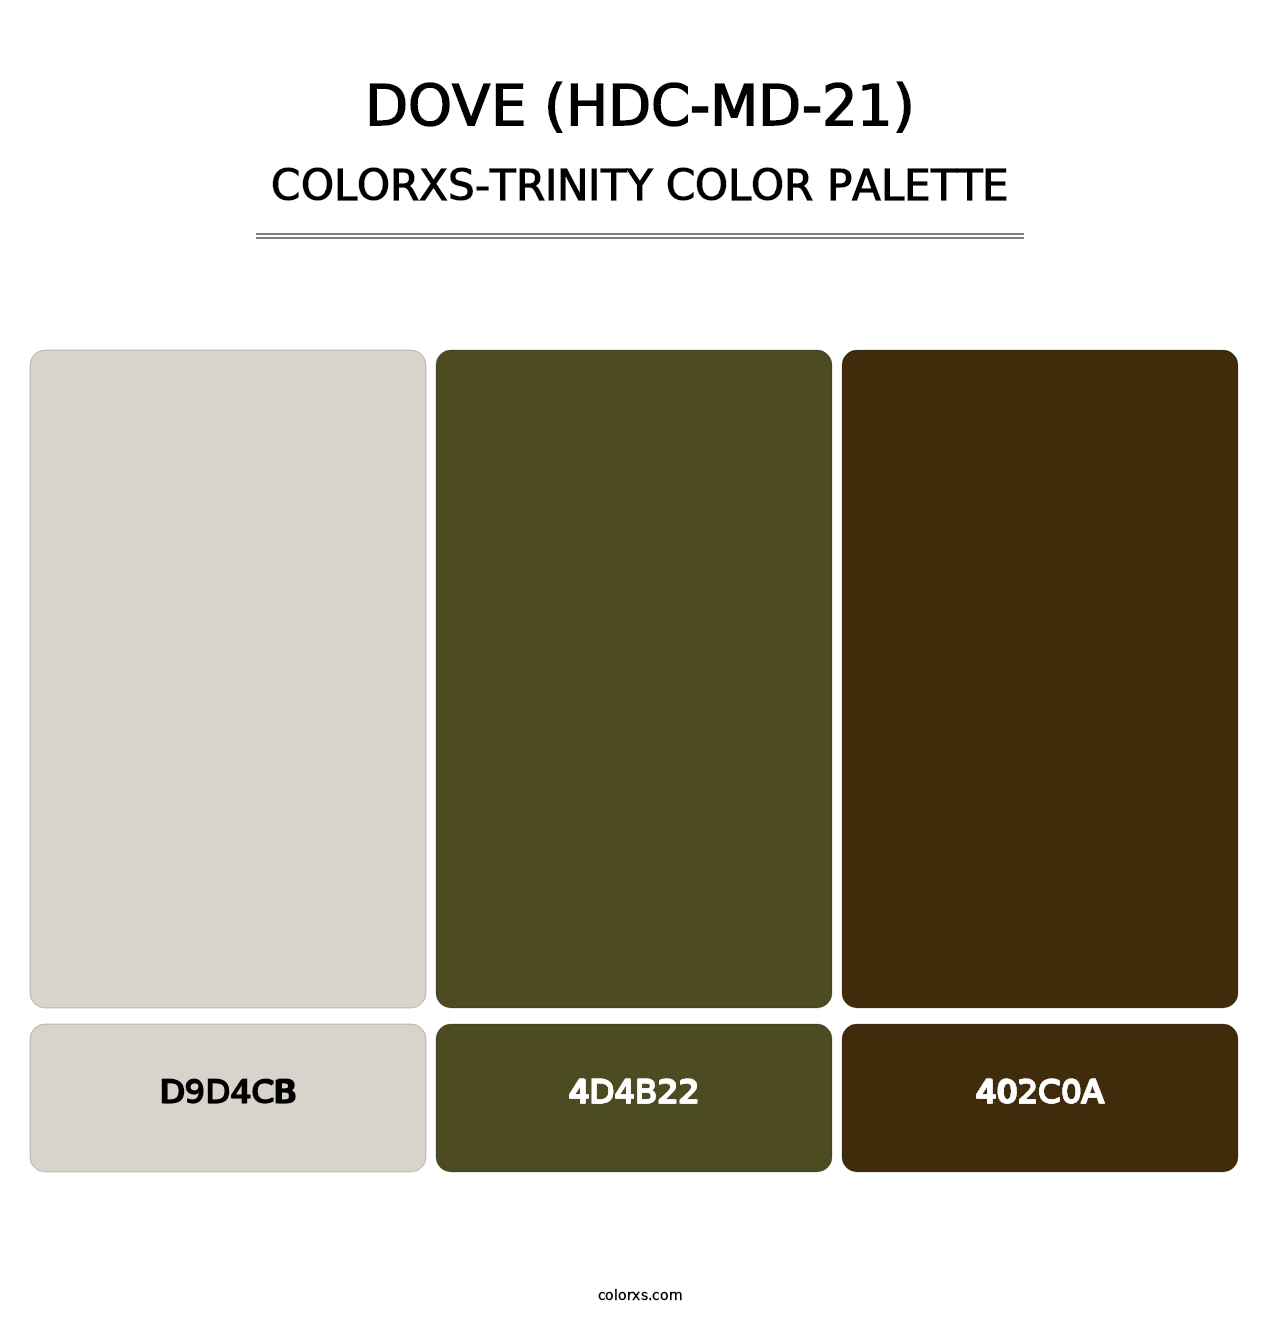 Dove (HDC-MD-21) - Colorxs Trinity Palette